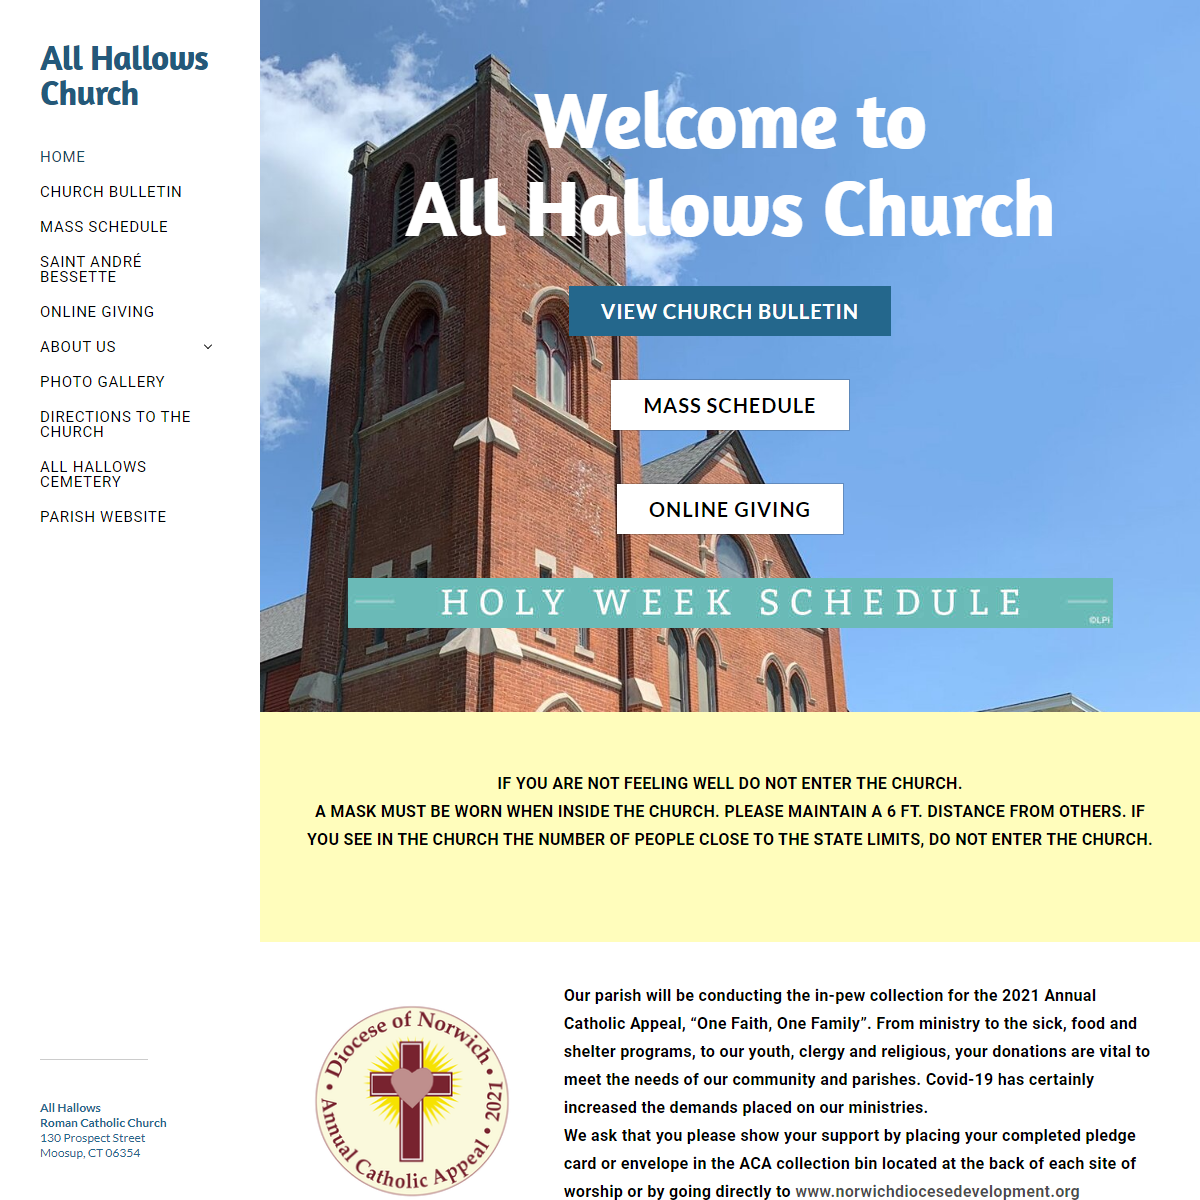 All Hallows Church - Home